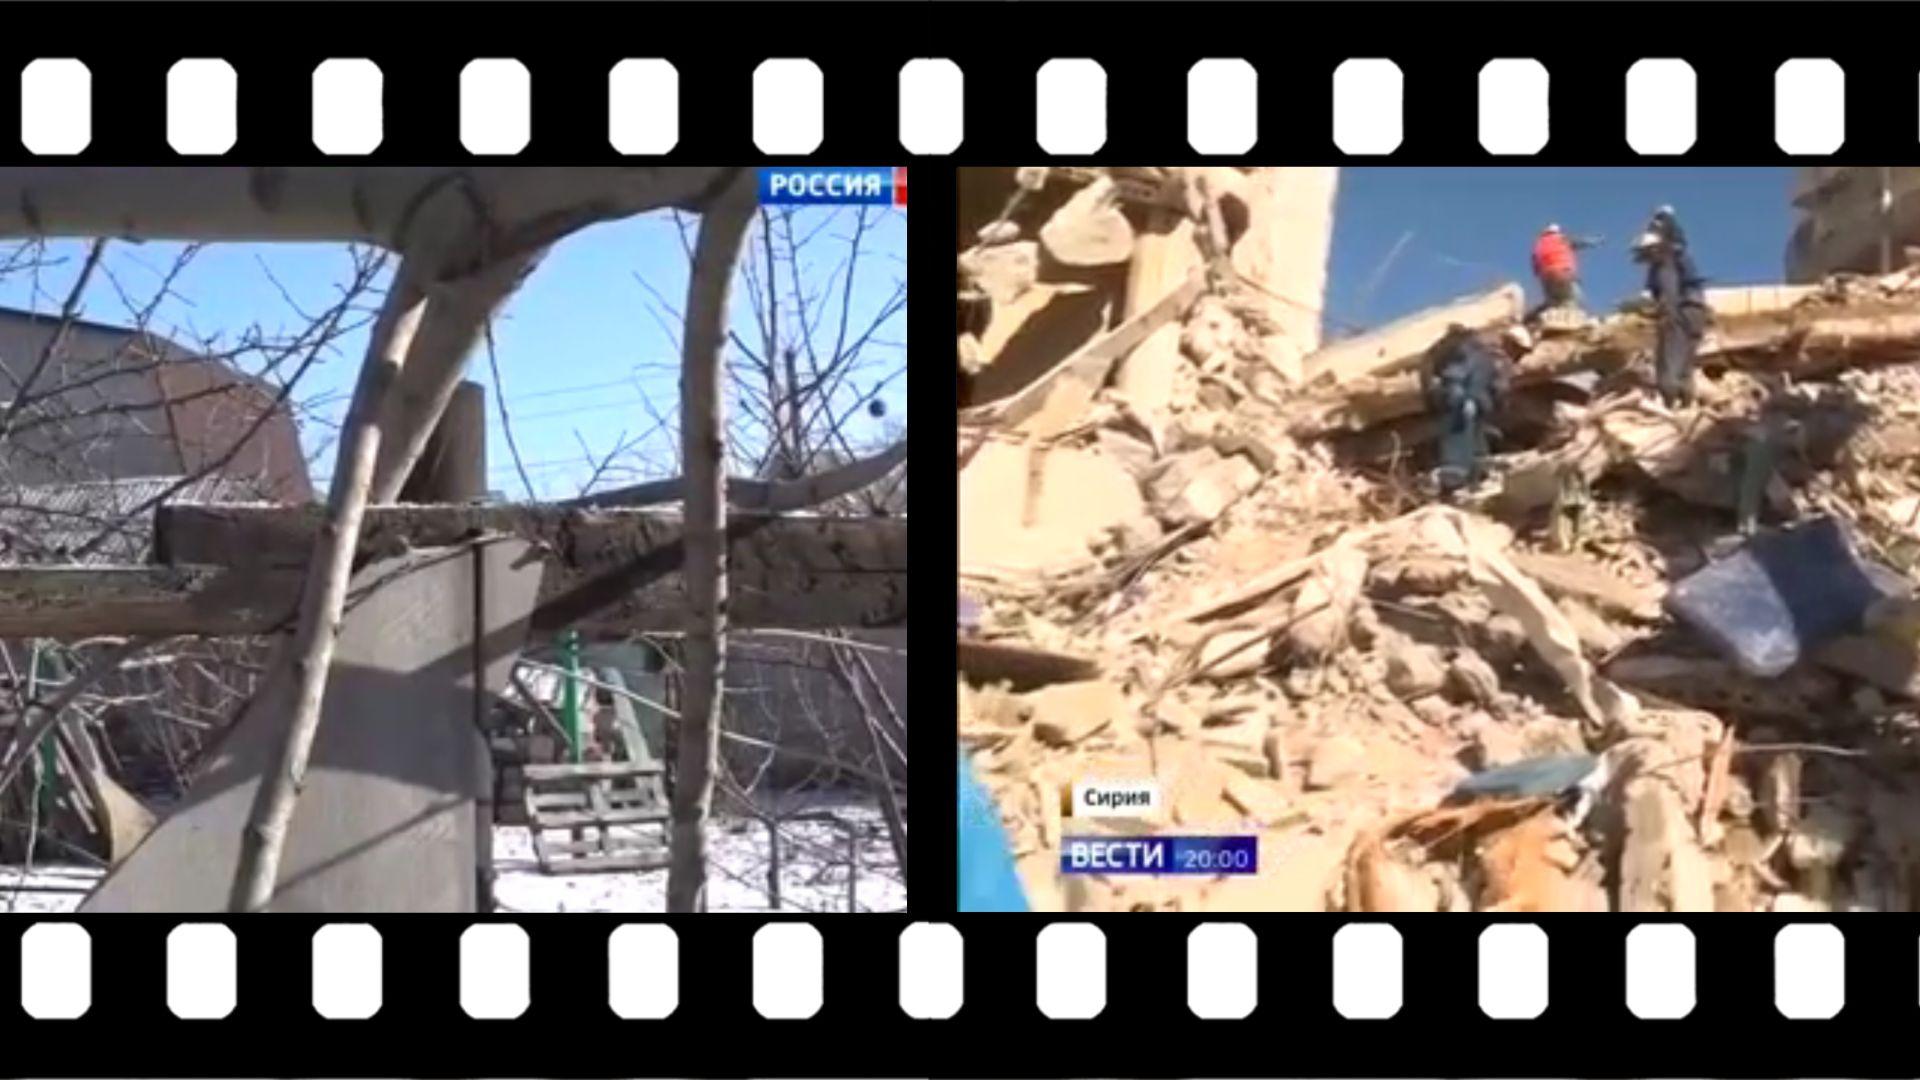 Grafika: w dwóch filmowych klatkach wstawione są obrazy zniszczonych miast